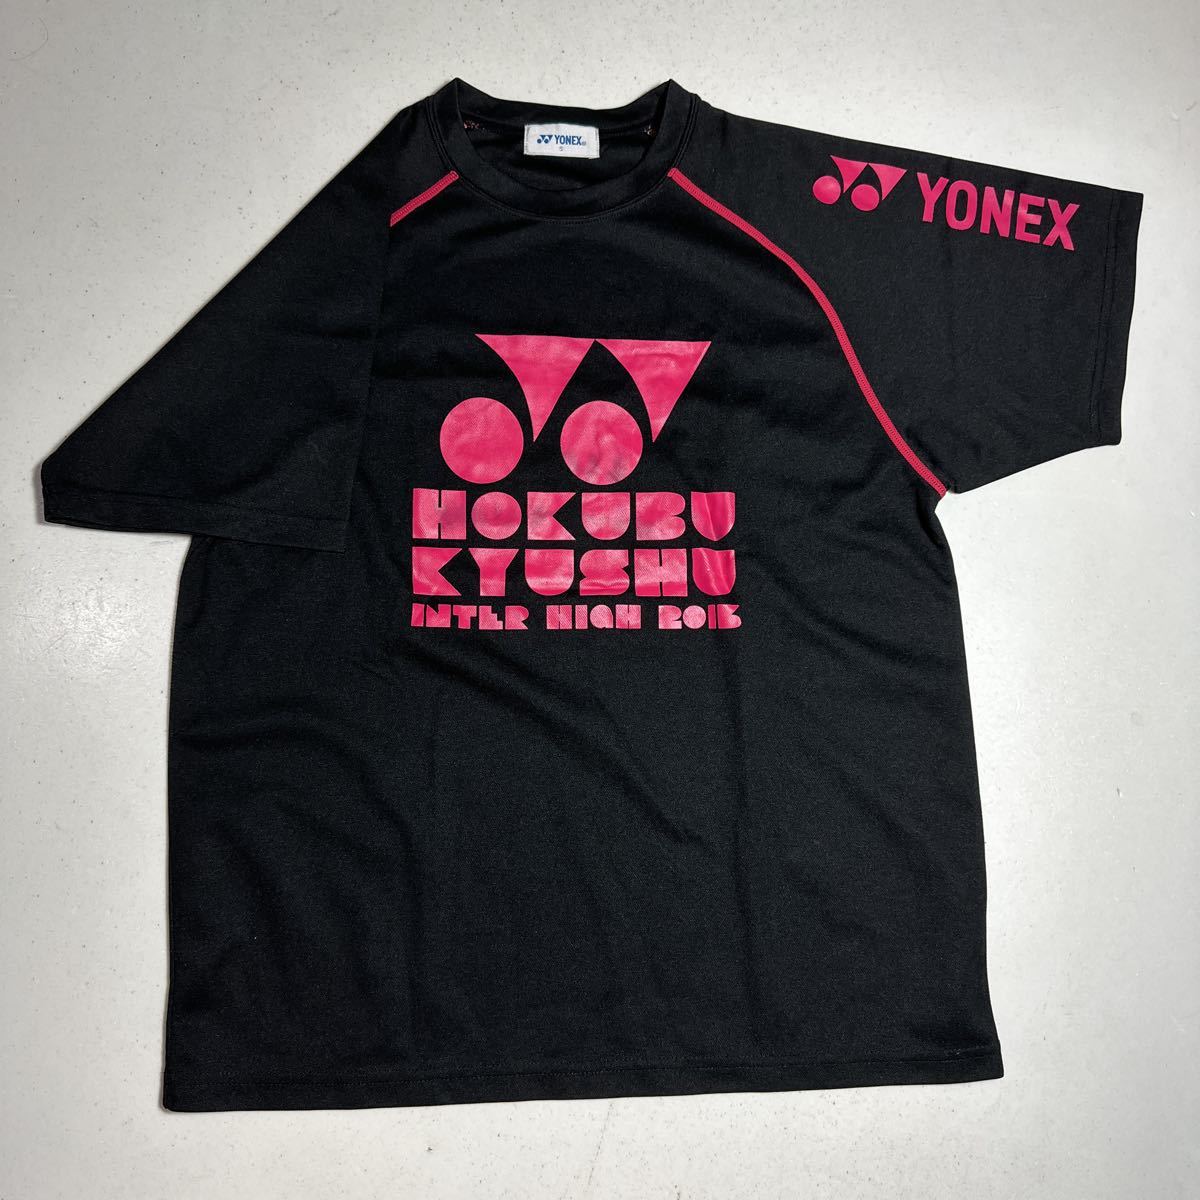 北部九州 インターハイ 2013 ヨネックス YONEX テニス バドミントン ゲームシャツ ウェア _画像1